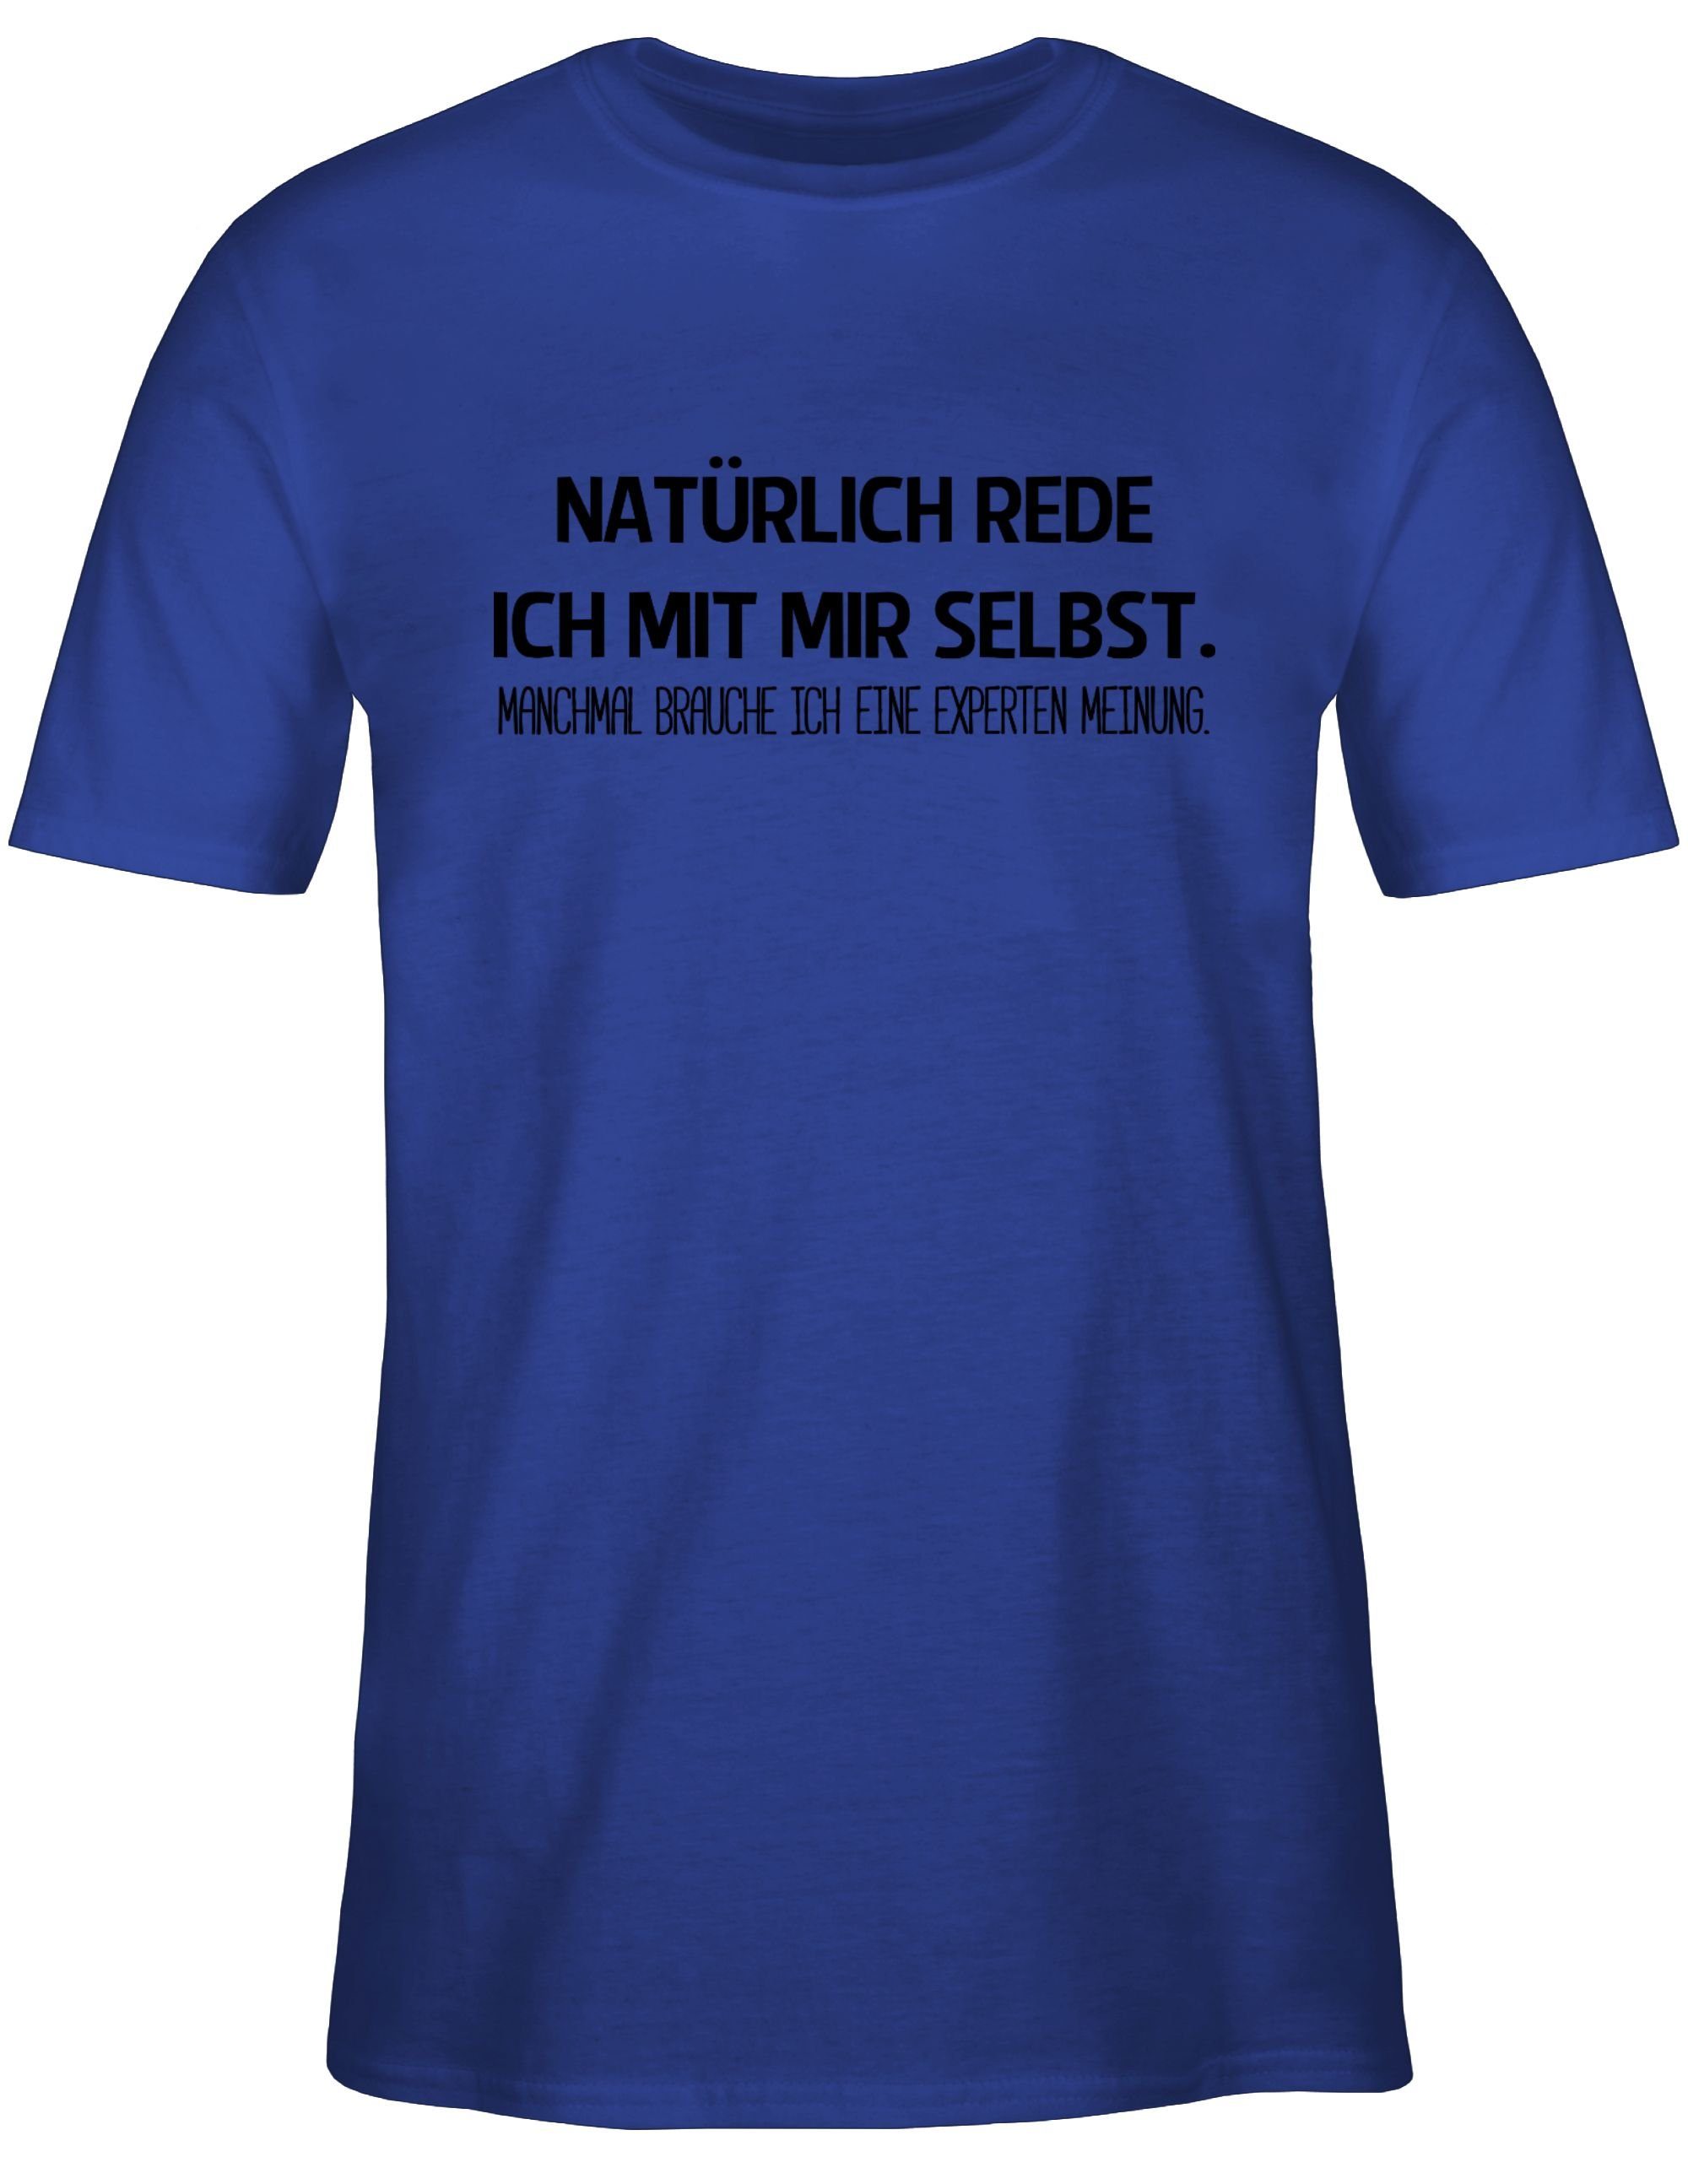 Statement T-Shirt ich selbst! 3 mit Shirtracer Royalblau rede mir Sprüche Natürlich